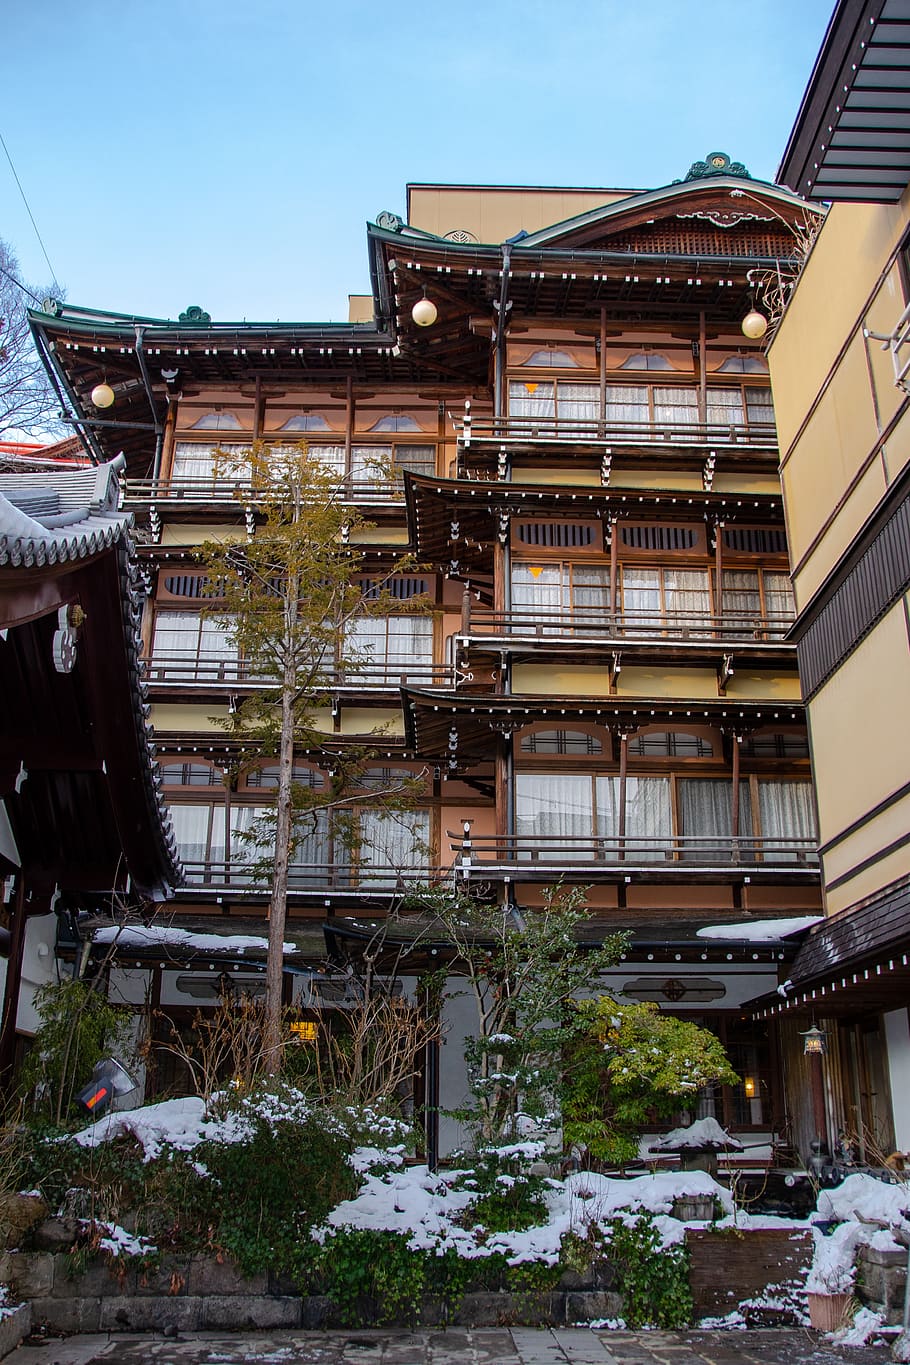 rumah mandi, shibu onsen, Jepang, tradisional, budaya, Arsitektur, bangunan, spirited away, Hayao Miyazaki, anime